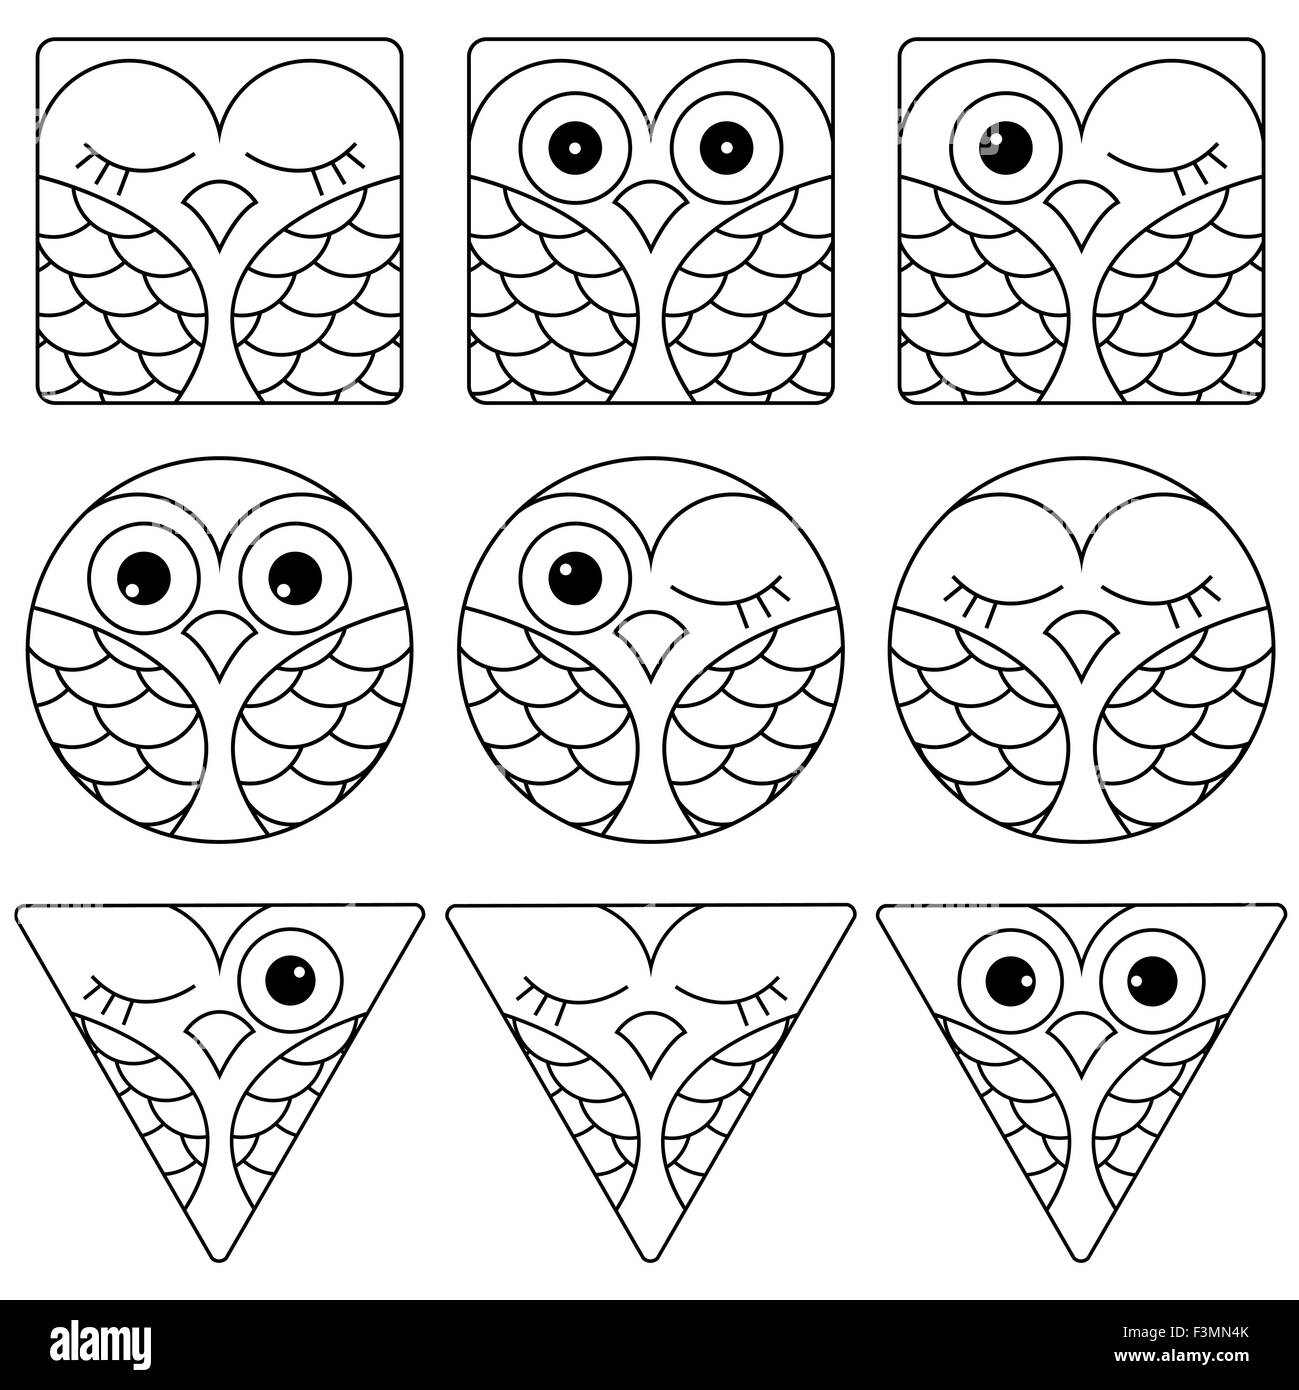 Série de 9 funny faces owl noir et blanc placées dans des figures géométriques : carré, cercle et triangulaire et isolé sur fond blanc ba Illustration de Vecteur